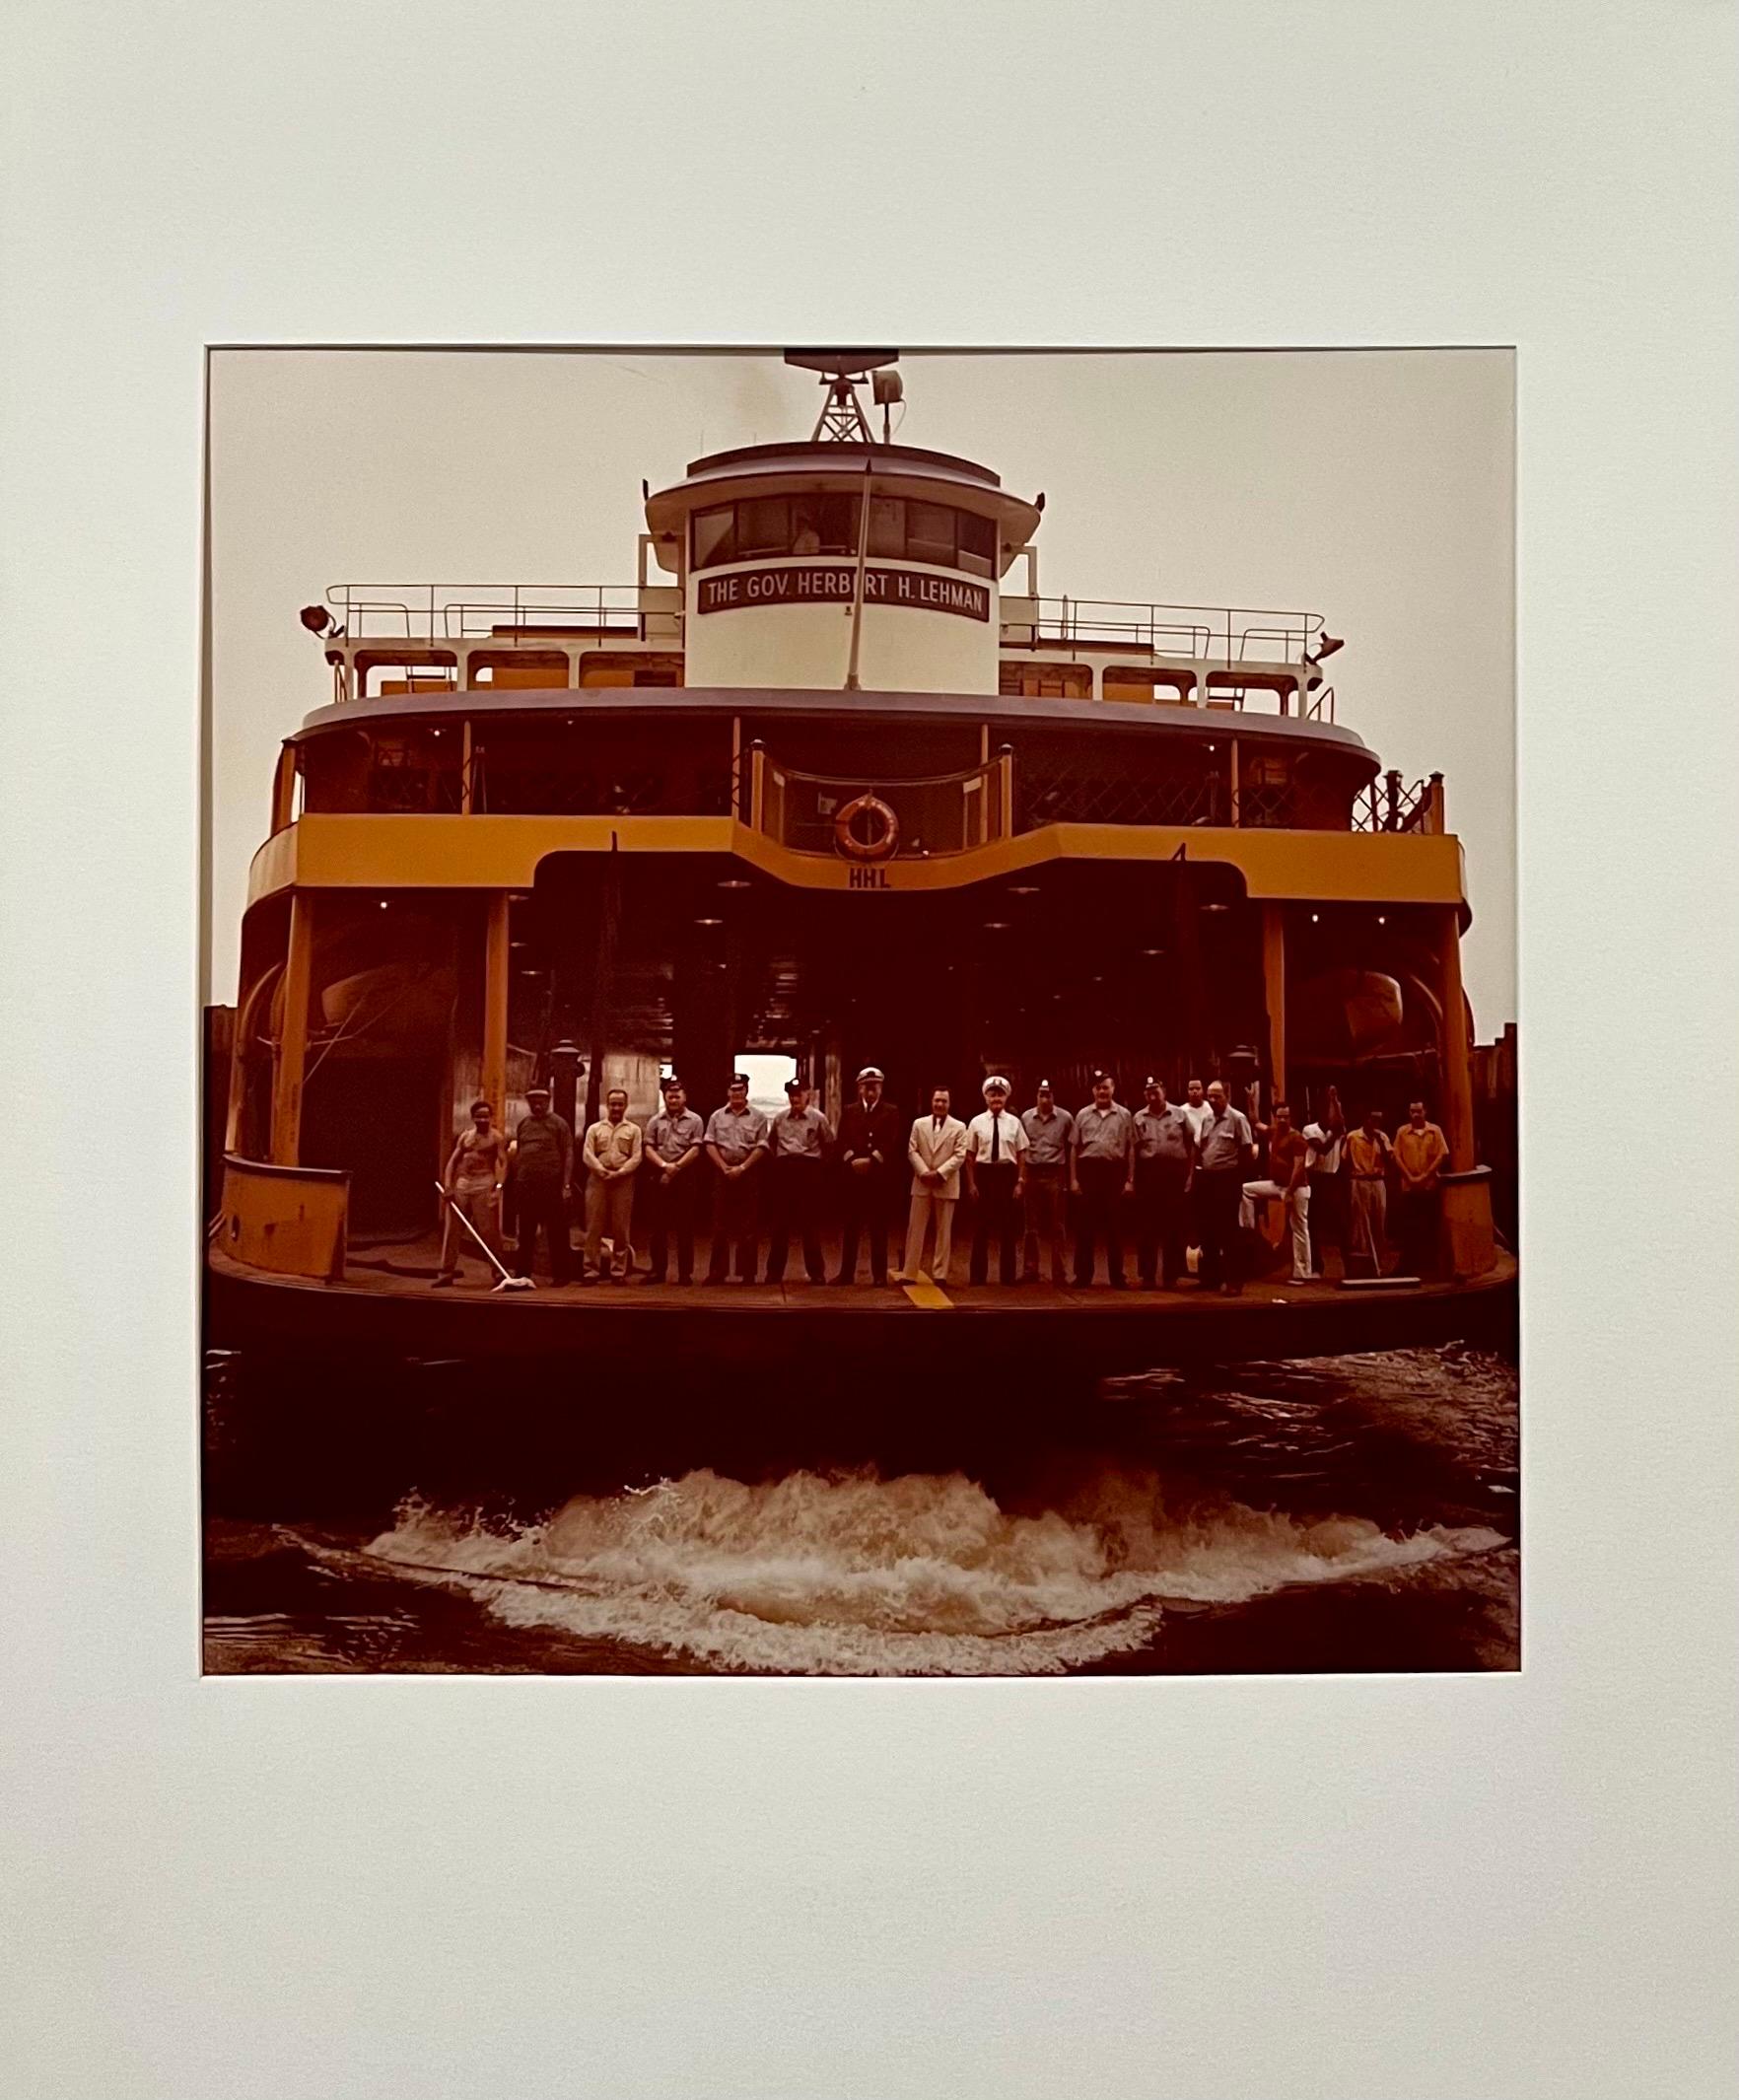 Neal Slavin (Américain, né en 1941)
L'équipage du ferry de Staten Island
Vintage C-print [Tirage à développement chromogène ; tirages Ektacolor].
Signé et numéroté à la main par le photographe 48/75
Photos réalisées avec un appareil Hasselblad 2,25